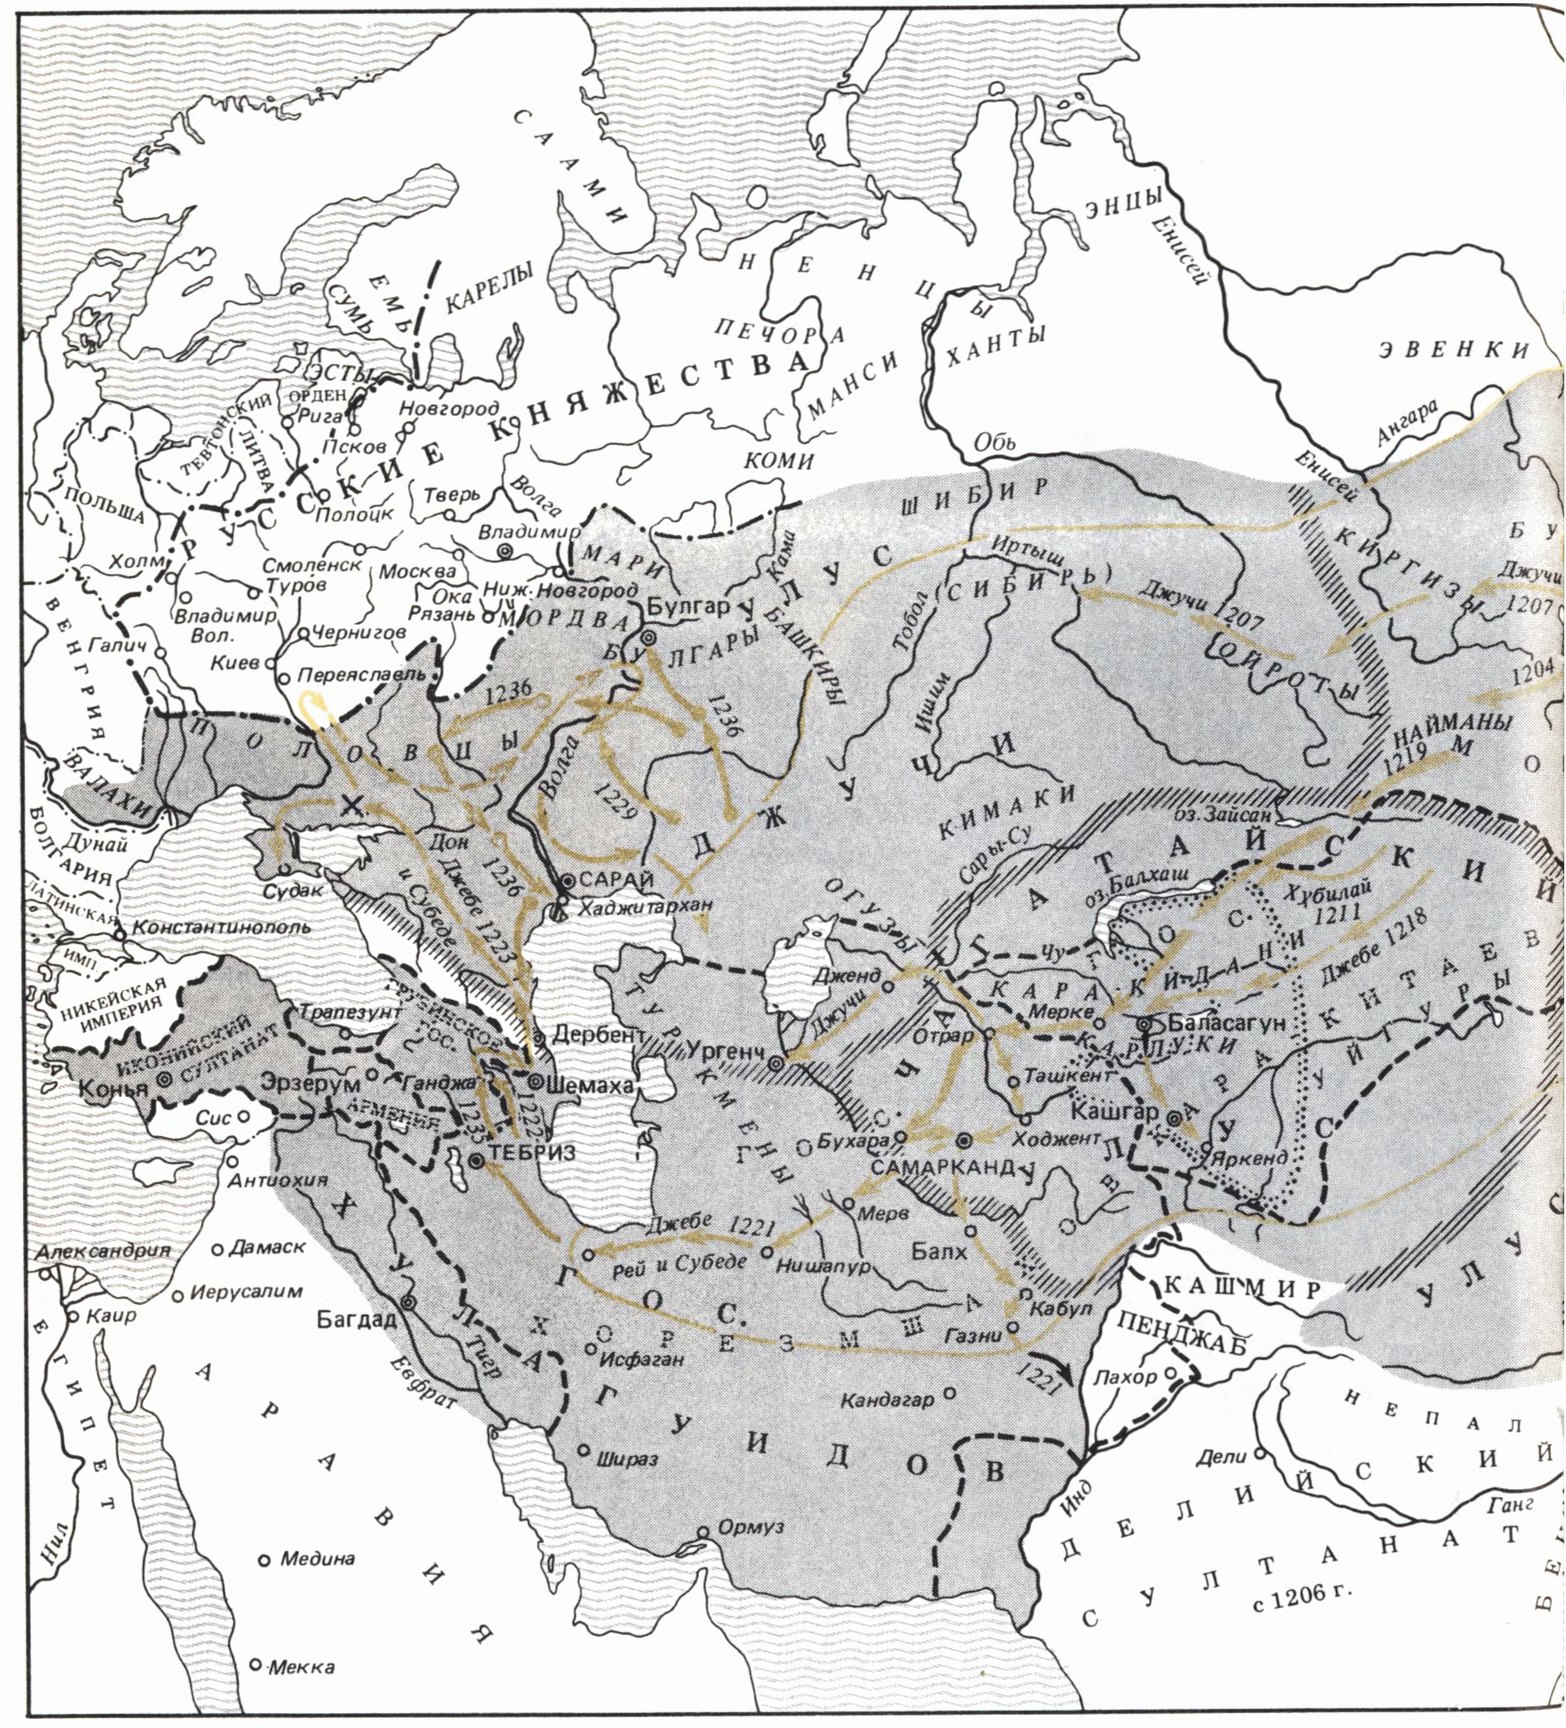 Народы под властью монголов в XIII в. и походы монгольских войск до 1236 г. (составлена на основании карты И.А. Голубцова)